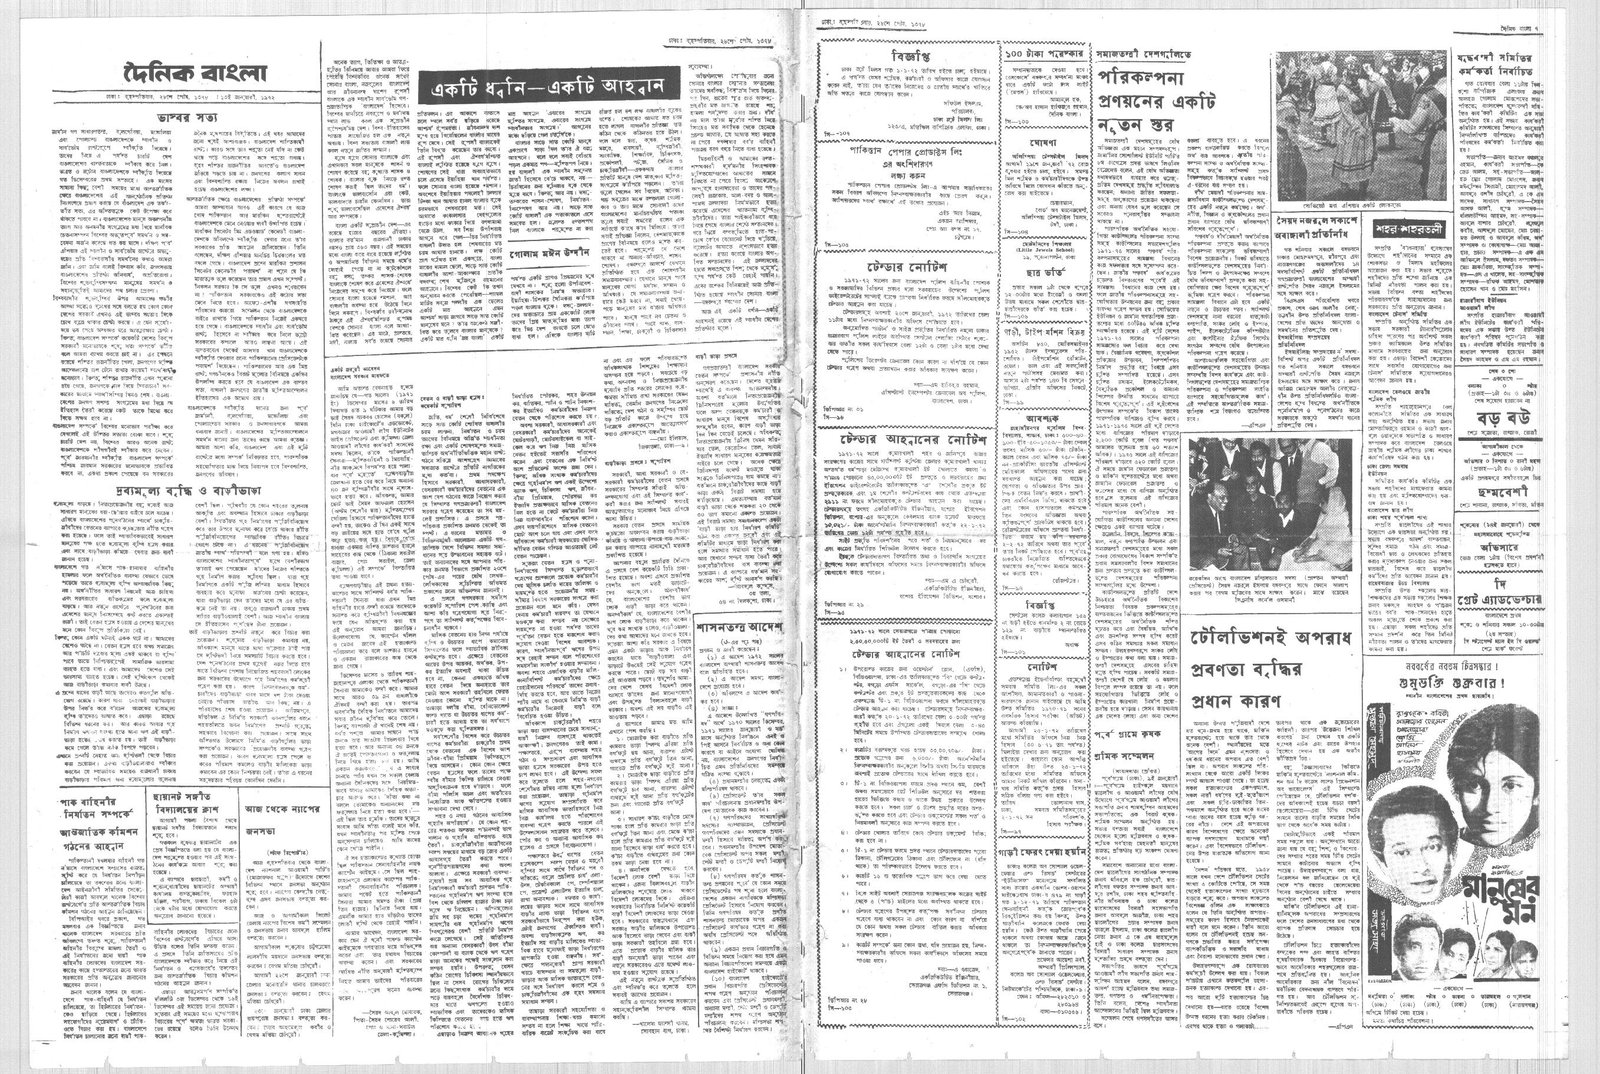 13JAN1972-DAINIK BANGLA-Regular-Page 2 and 7